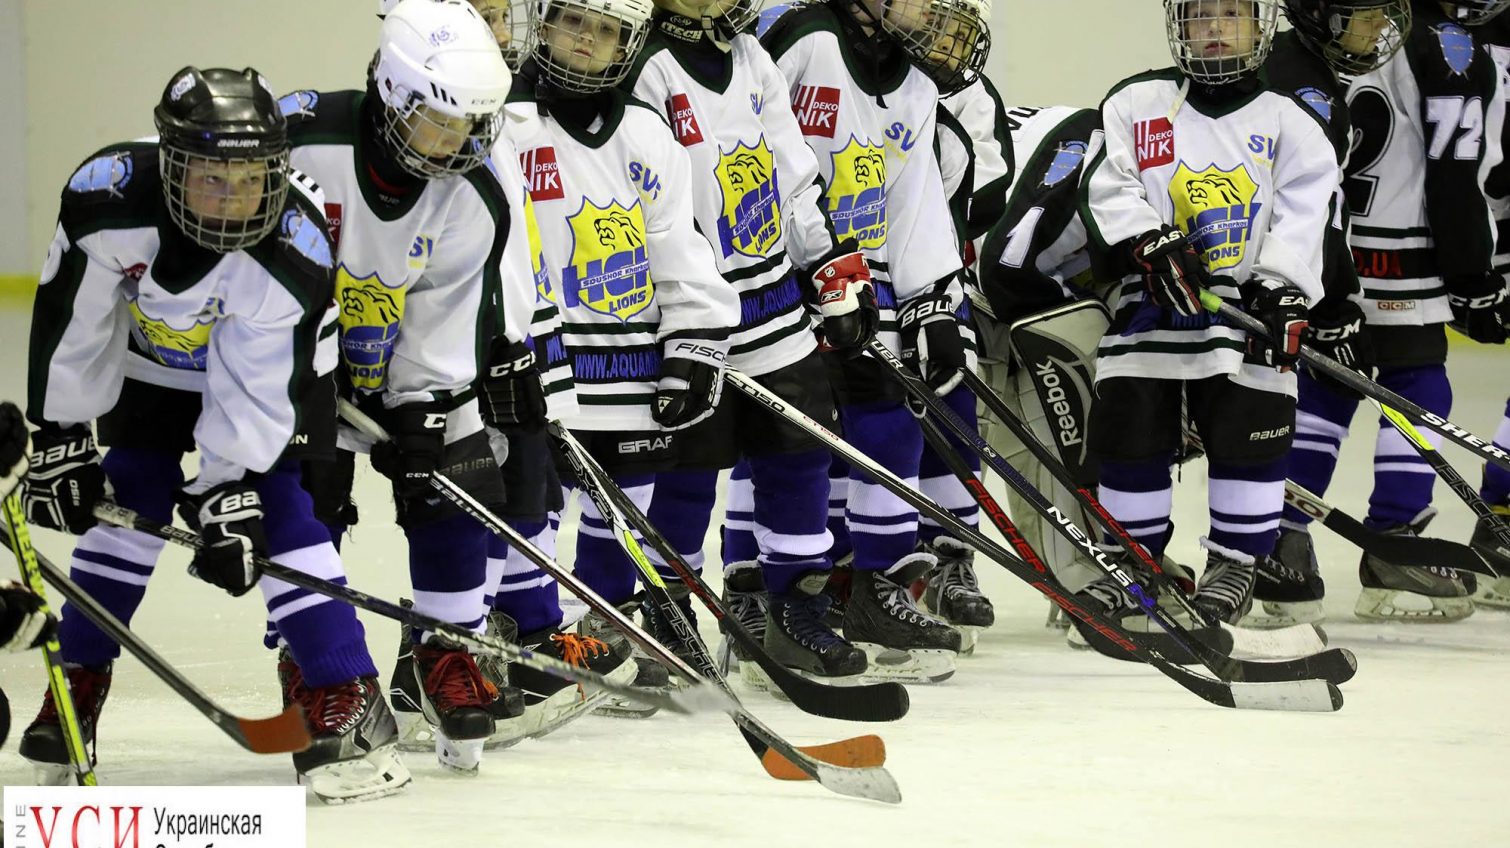 Борьба на льду: в Одессе проходят соревнования по хоккею (фоторепортаж) «фото»